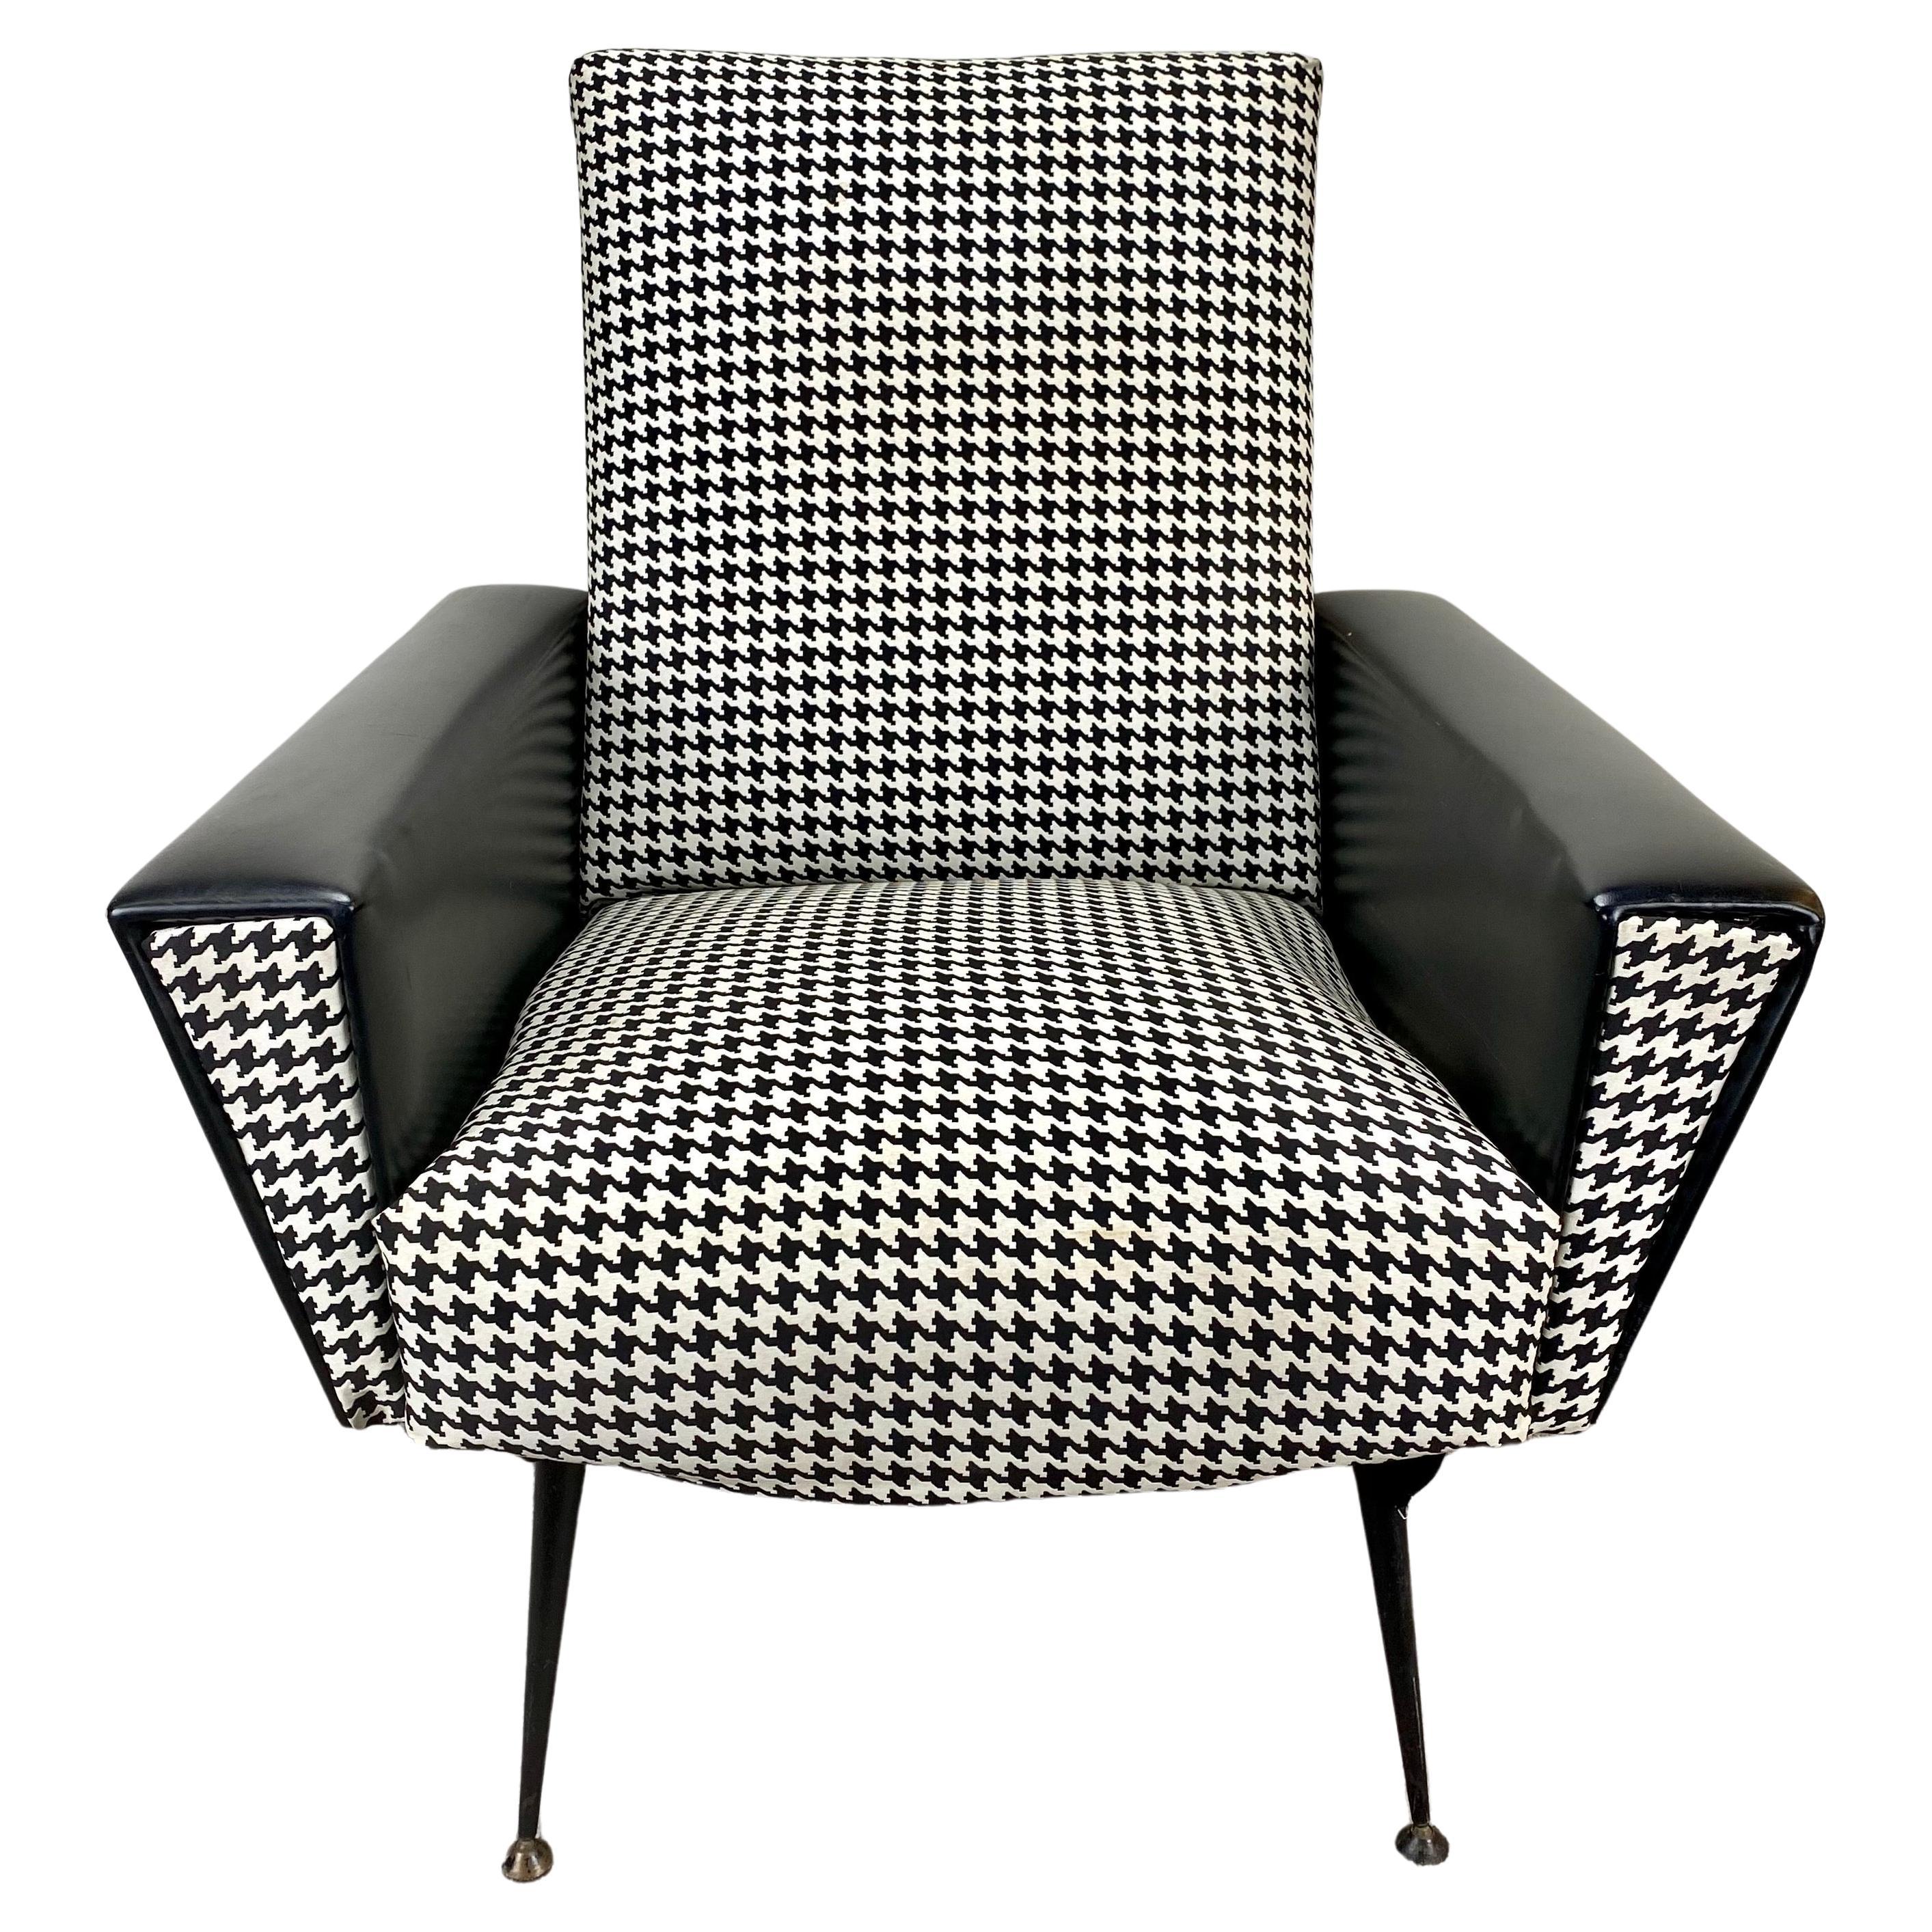 Fauteuil ou chaise longue The Modernity noir et blanc, années 1960